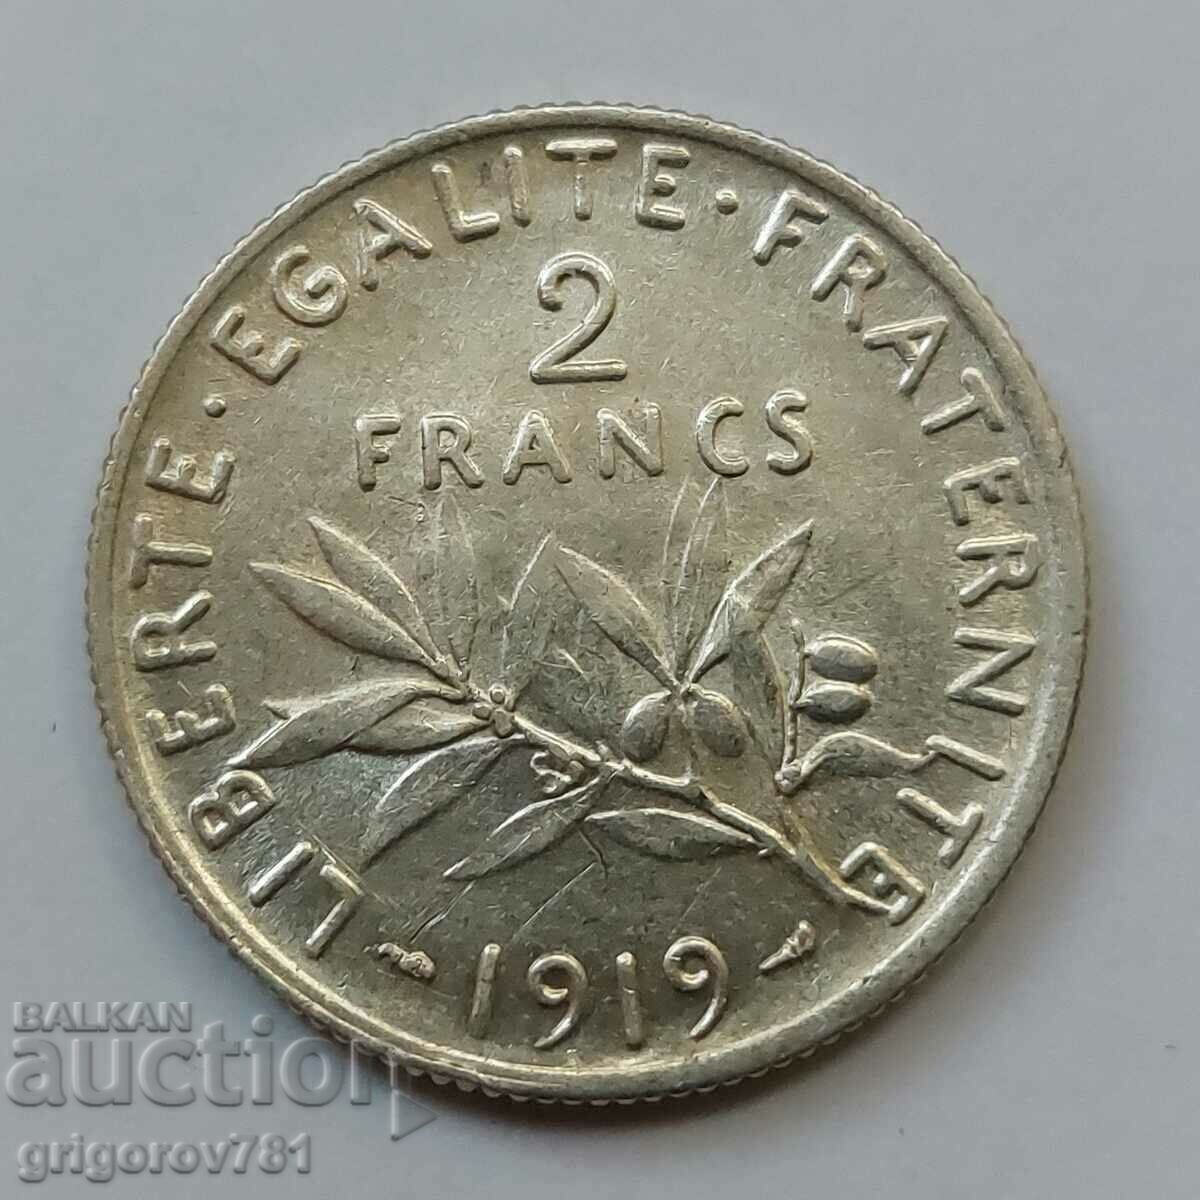 2 Φράγκα Ασήμι Γαλλία 1919 - Ασημένιο νόμισμα #42